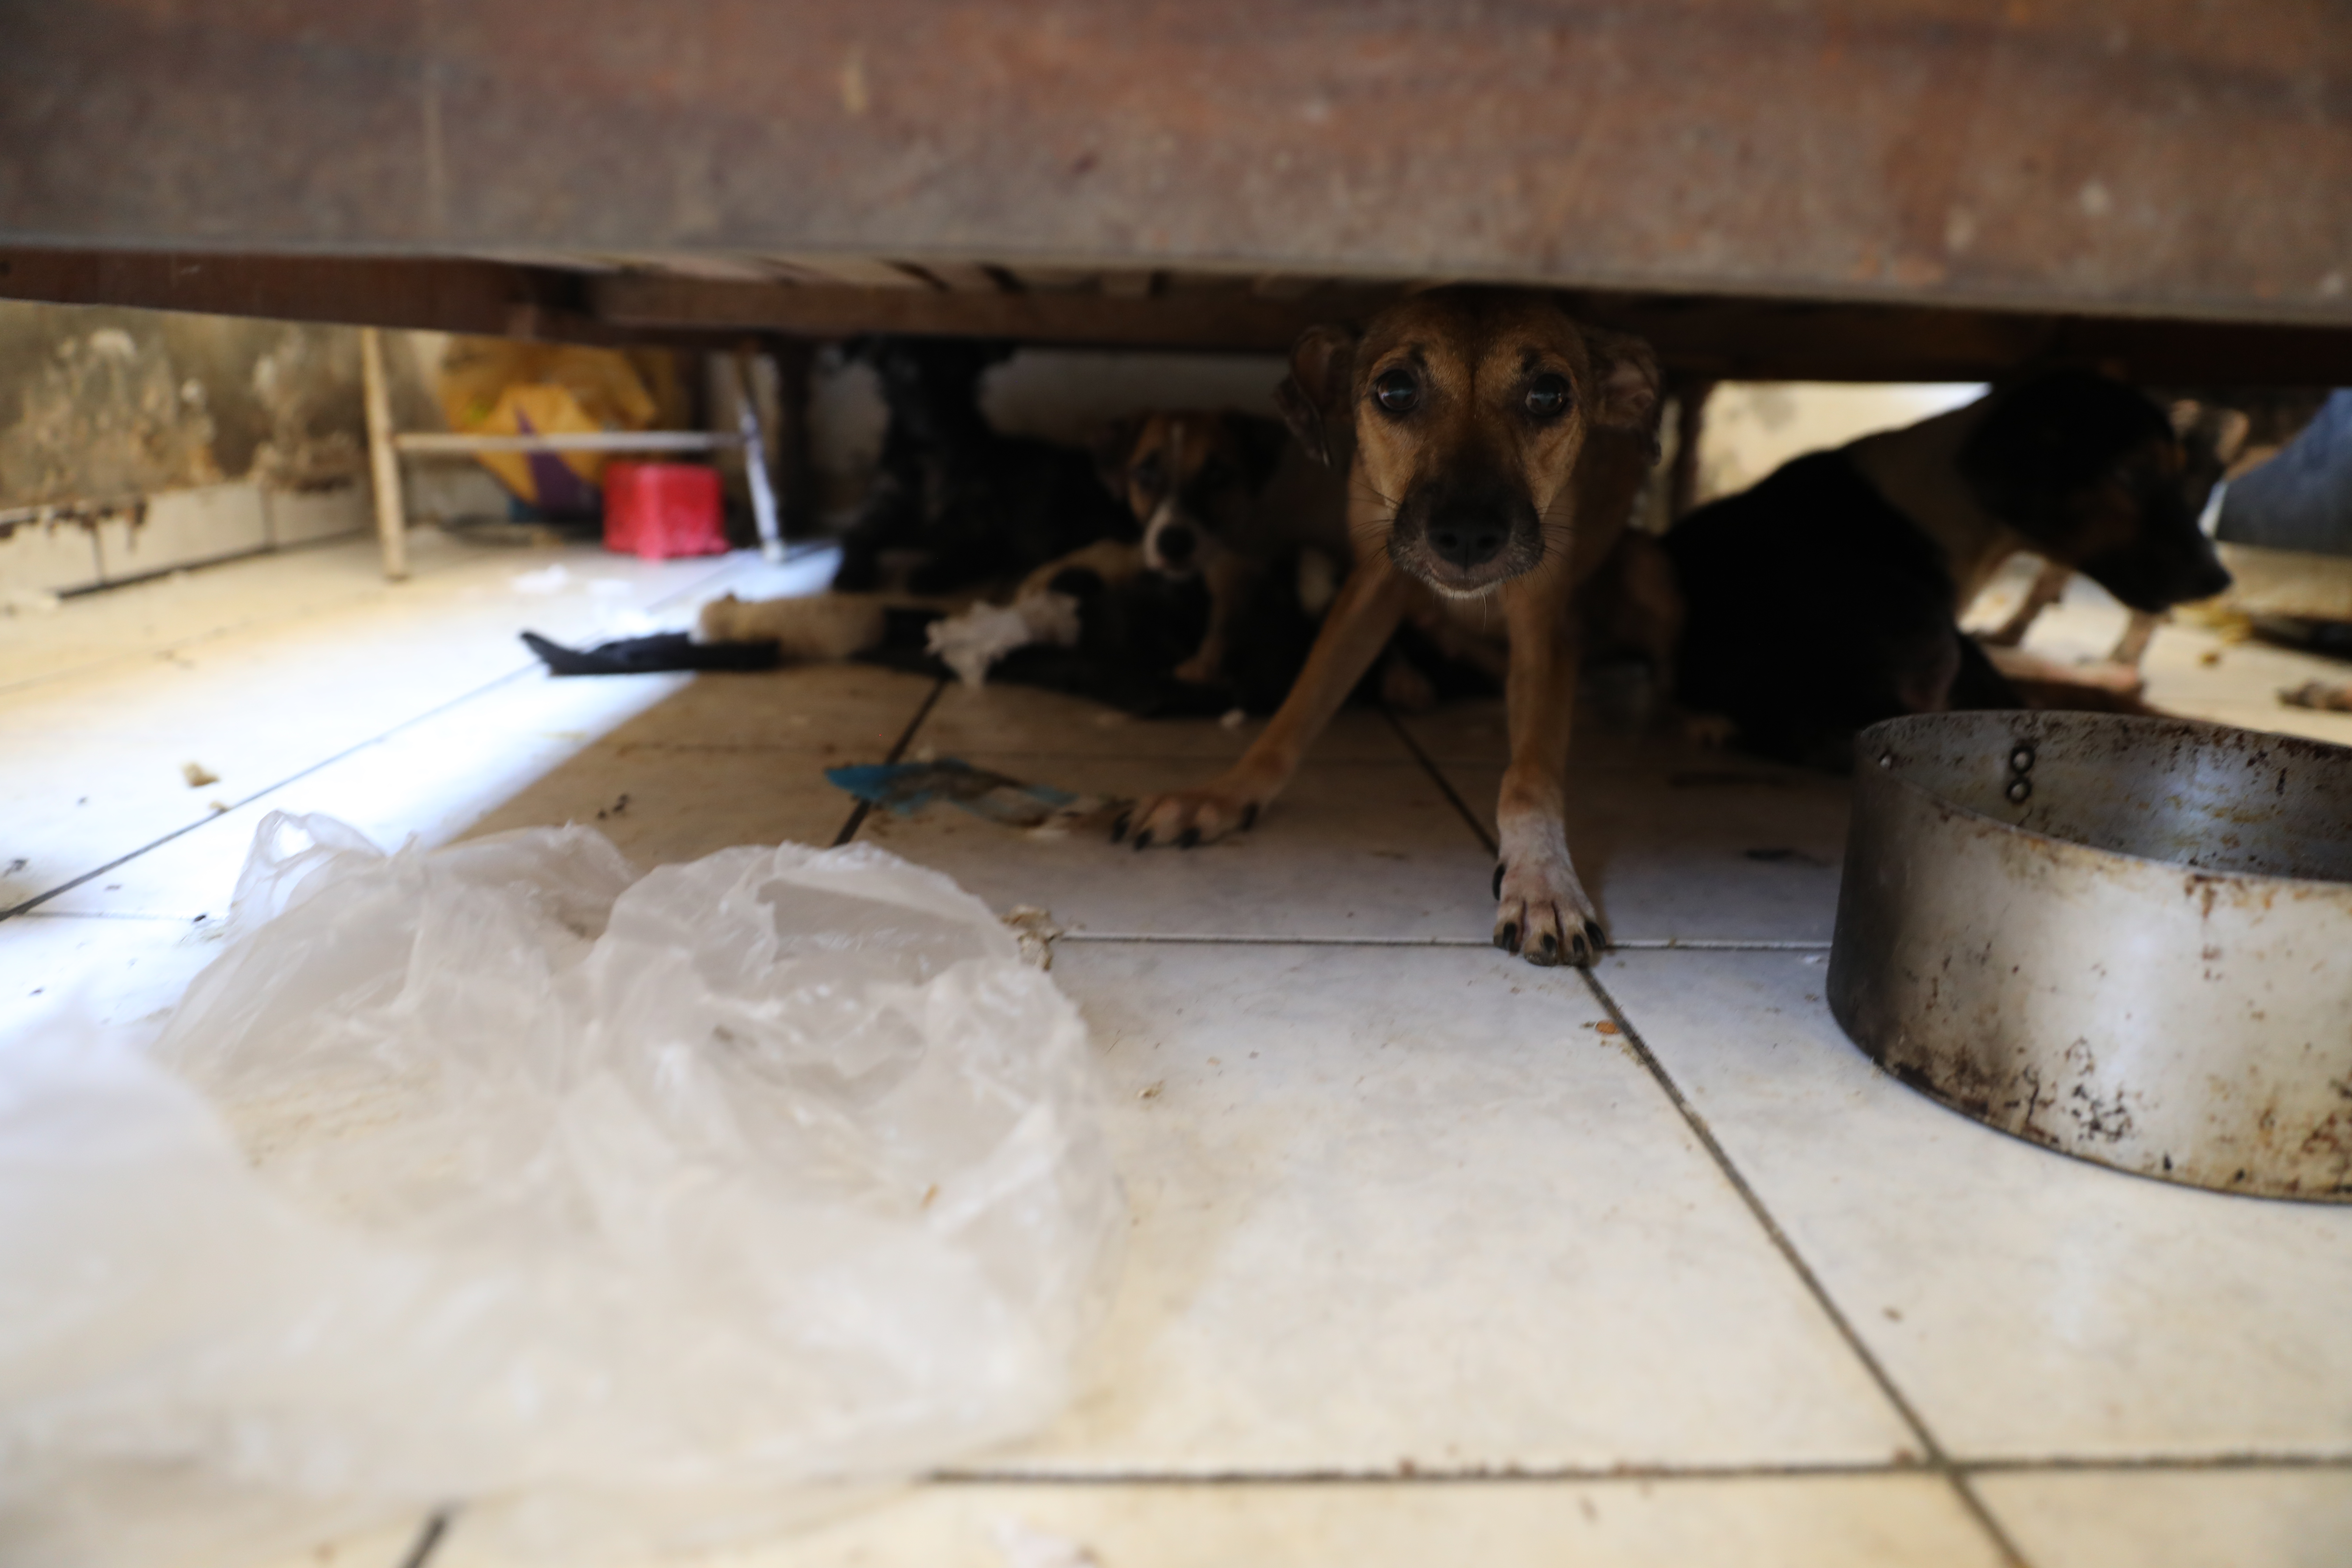 Ao todo, 26 cachorros, sendo 20 adultos e 6 filhotes, estavam em condições precárias numa residência no bairro Maracanã. No local, também foram encontrados pelo menos 10 animais mortos